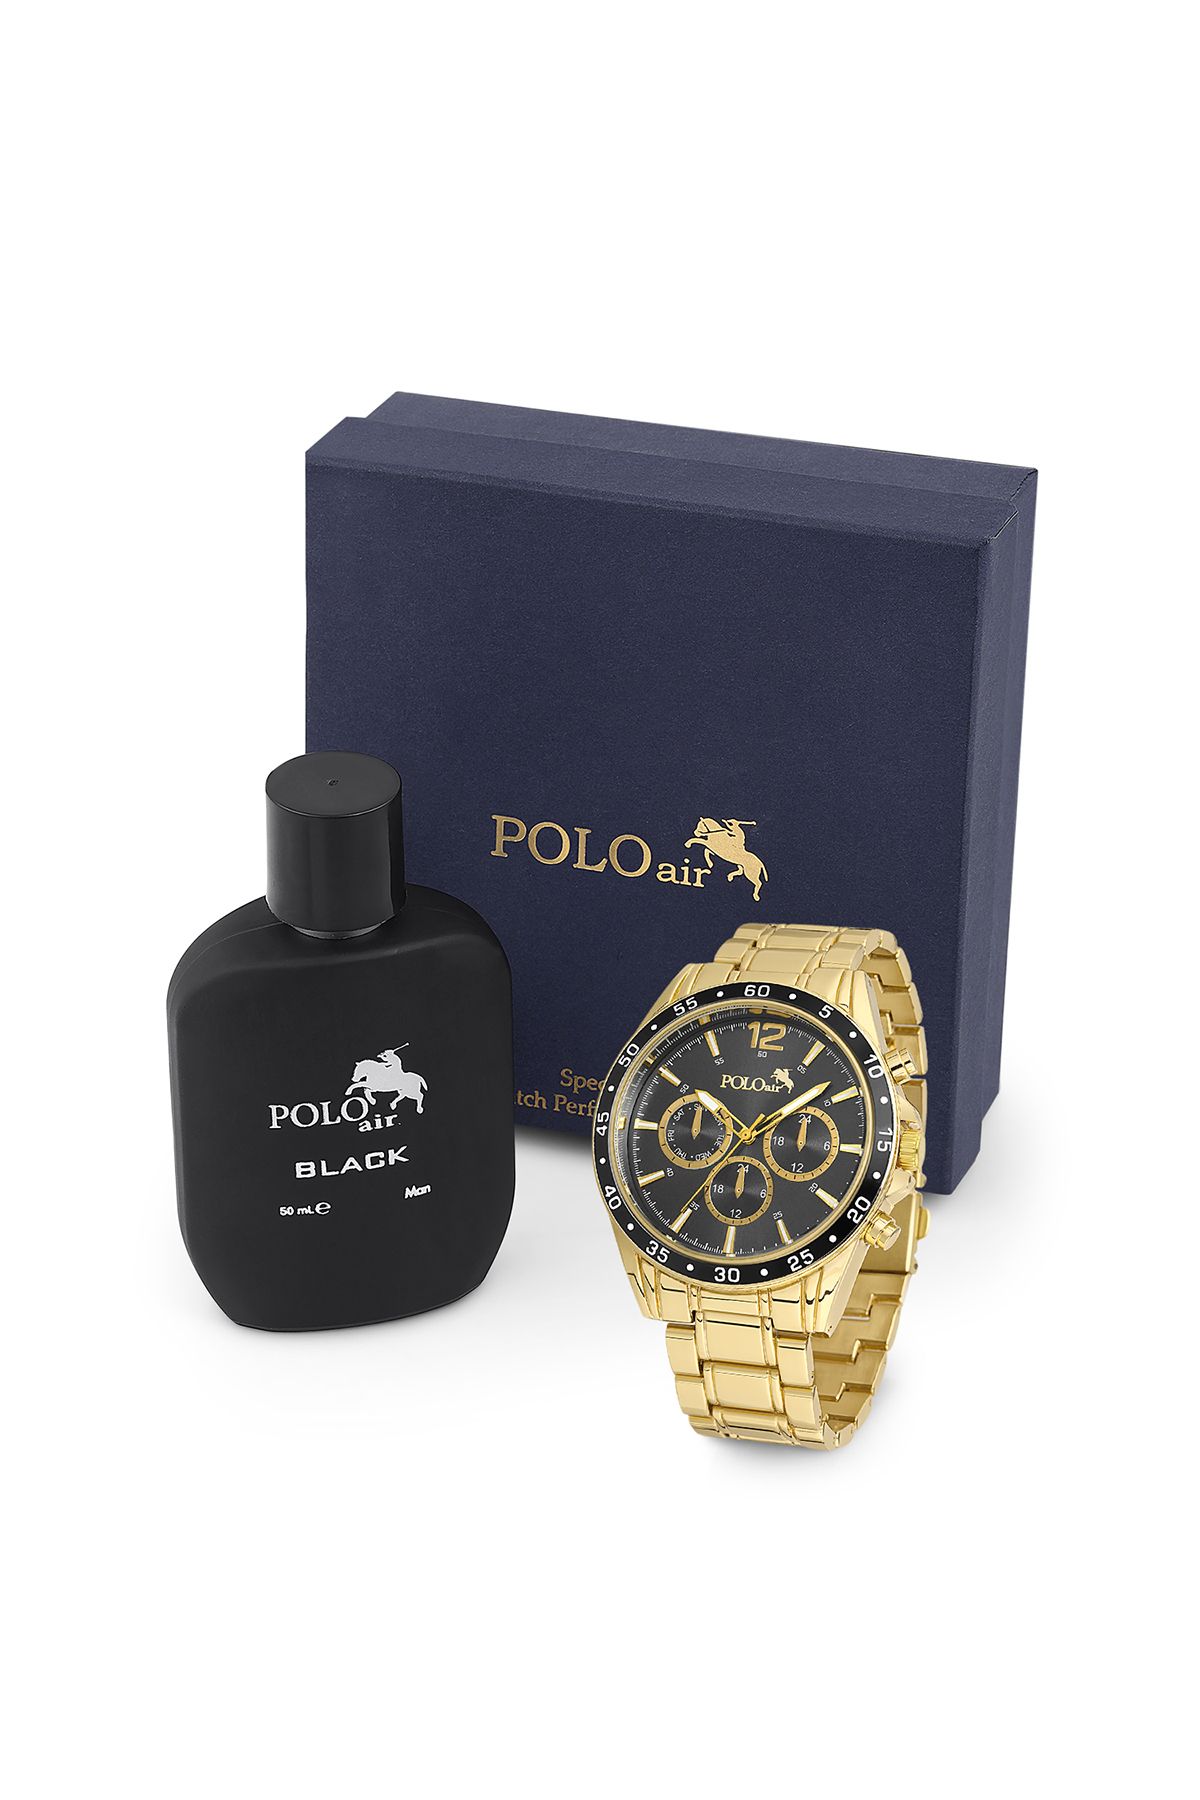 polo air Erkek Kol Saati Ve Parfüm Seti Hediyelik Kutusunda Kombin Sarı Renk